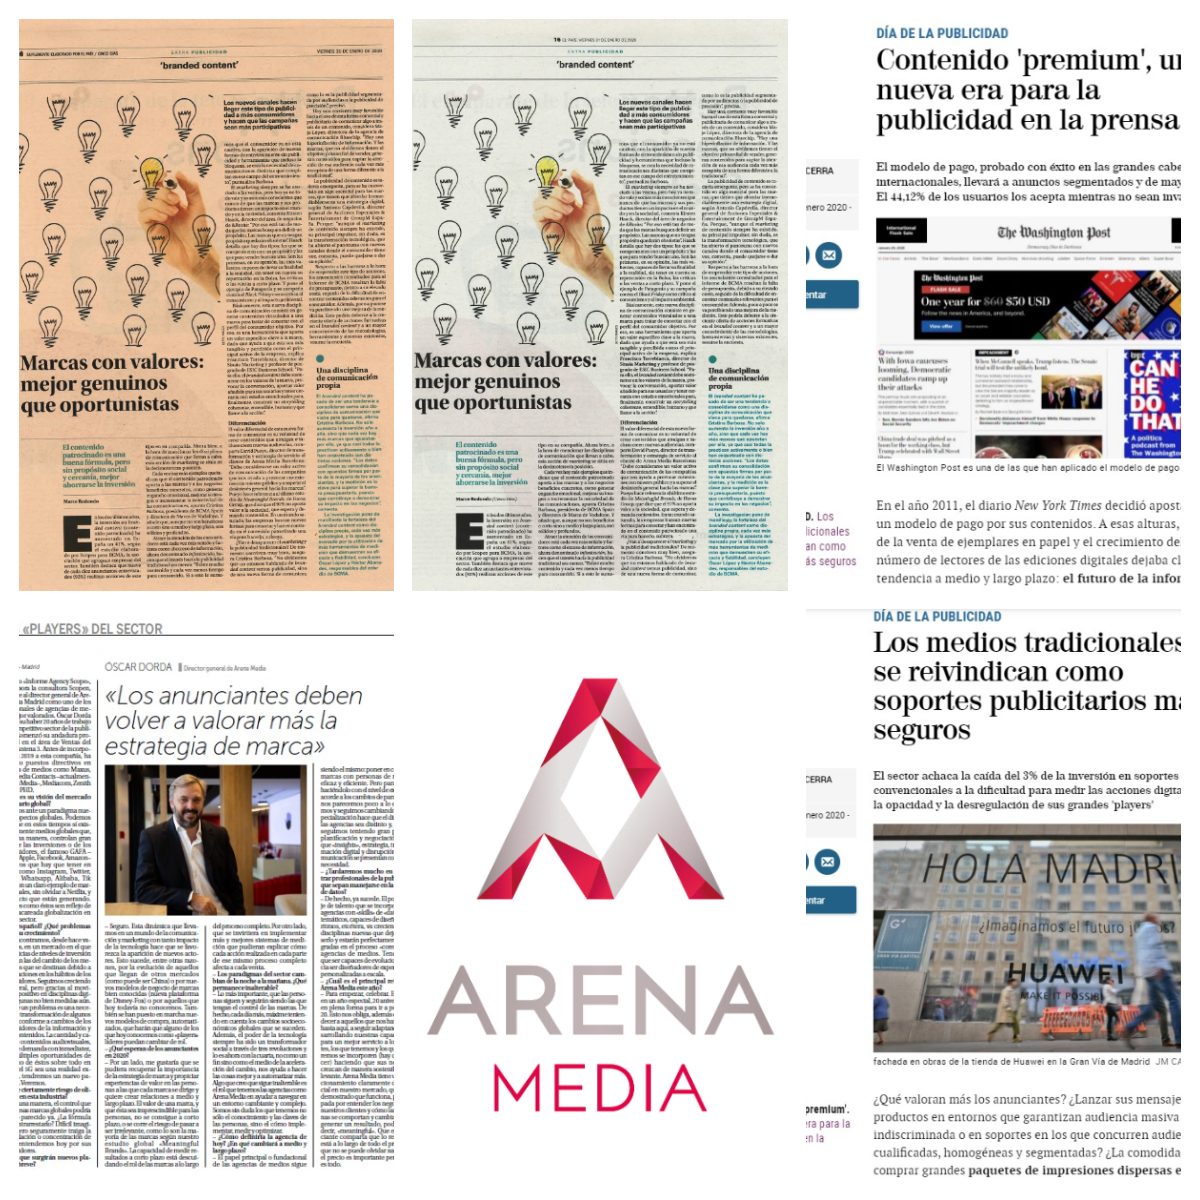 Arena Media en los Especiales de la Publicidad en la prensa generalista de enero 2020